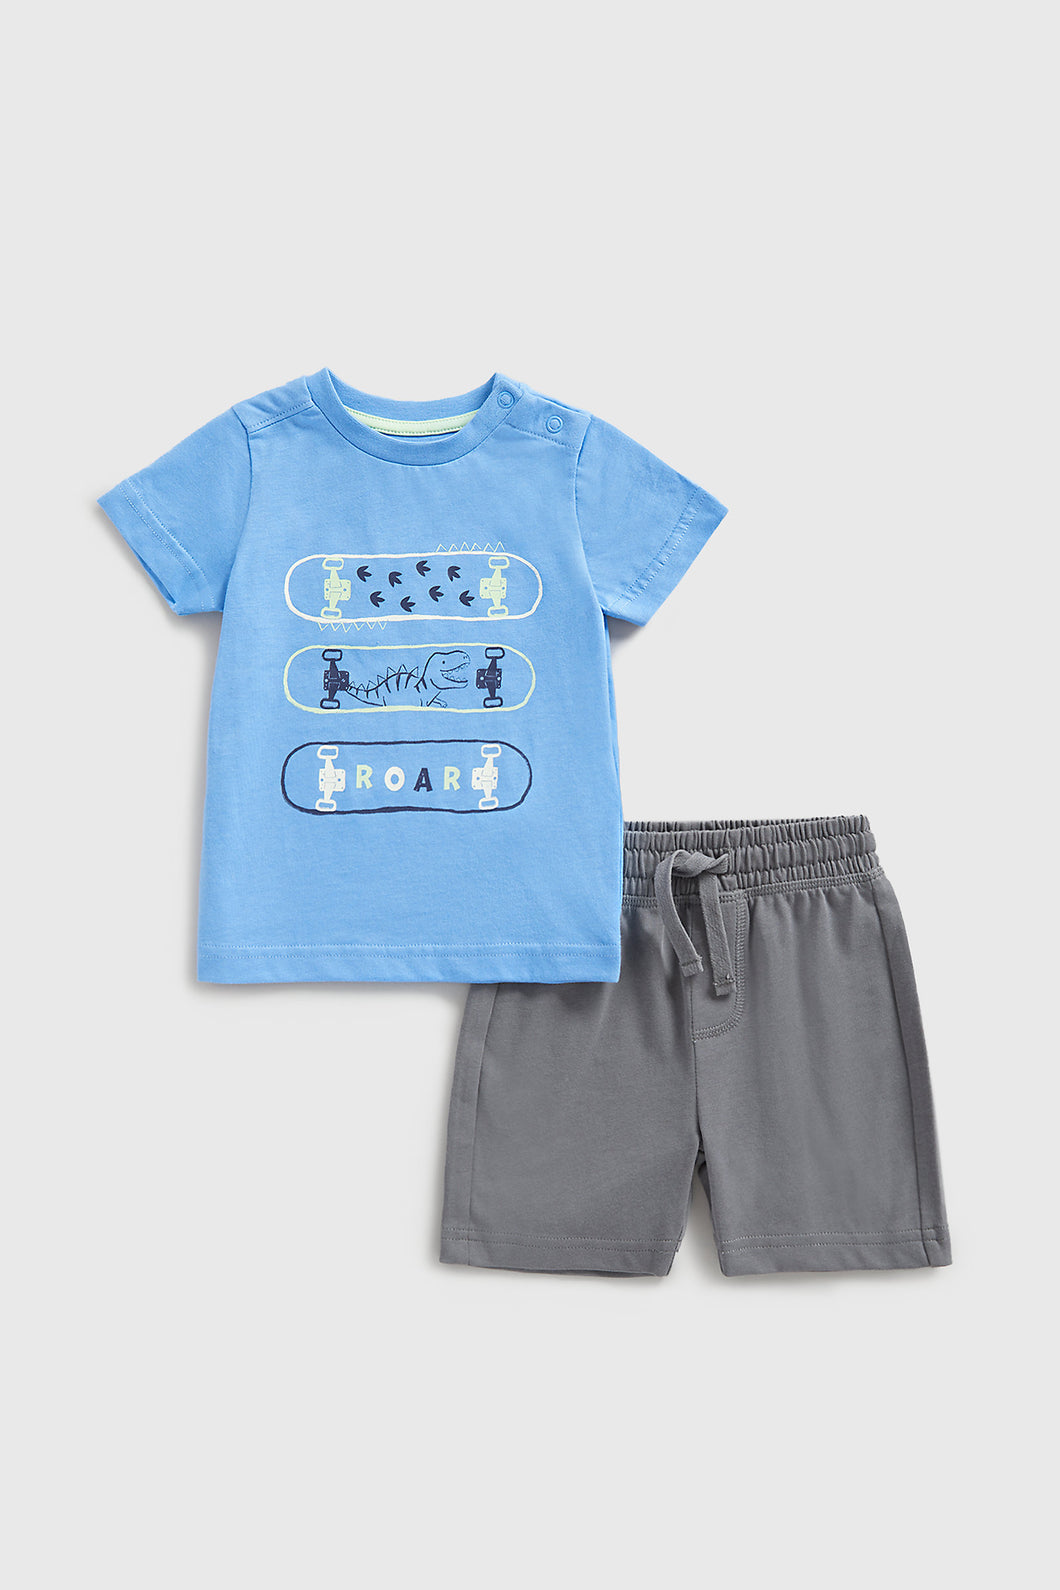 Mothercare Dinosaur T-Shirt and Shorts Set